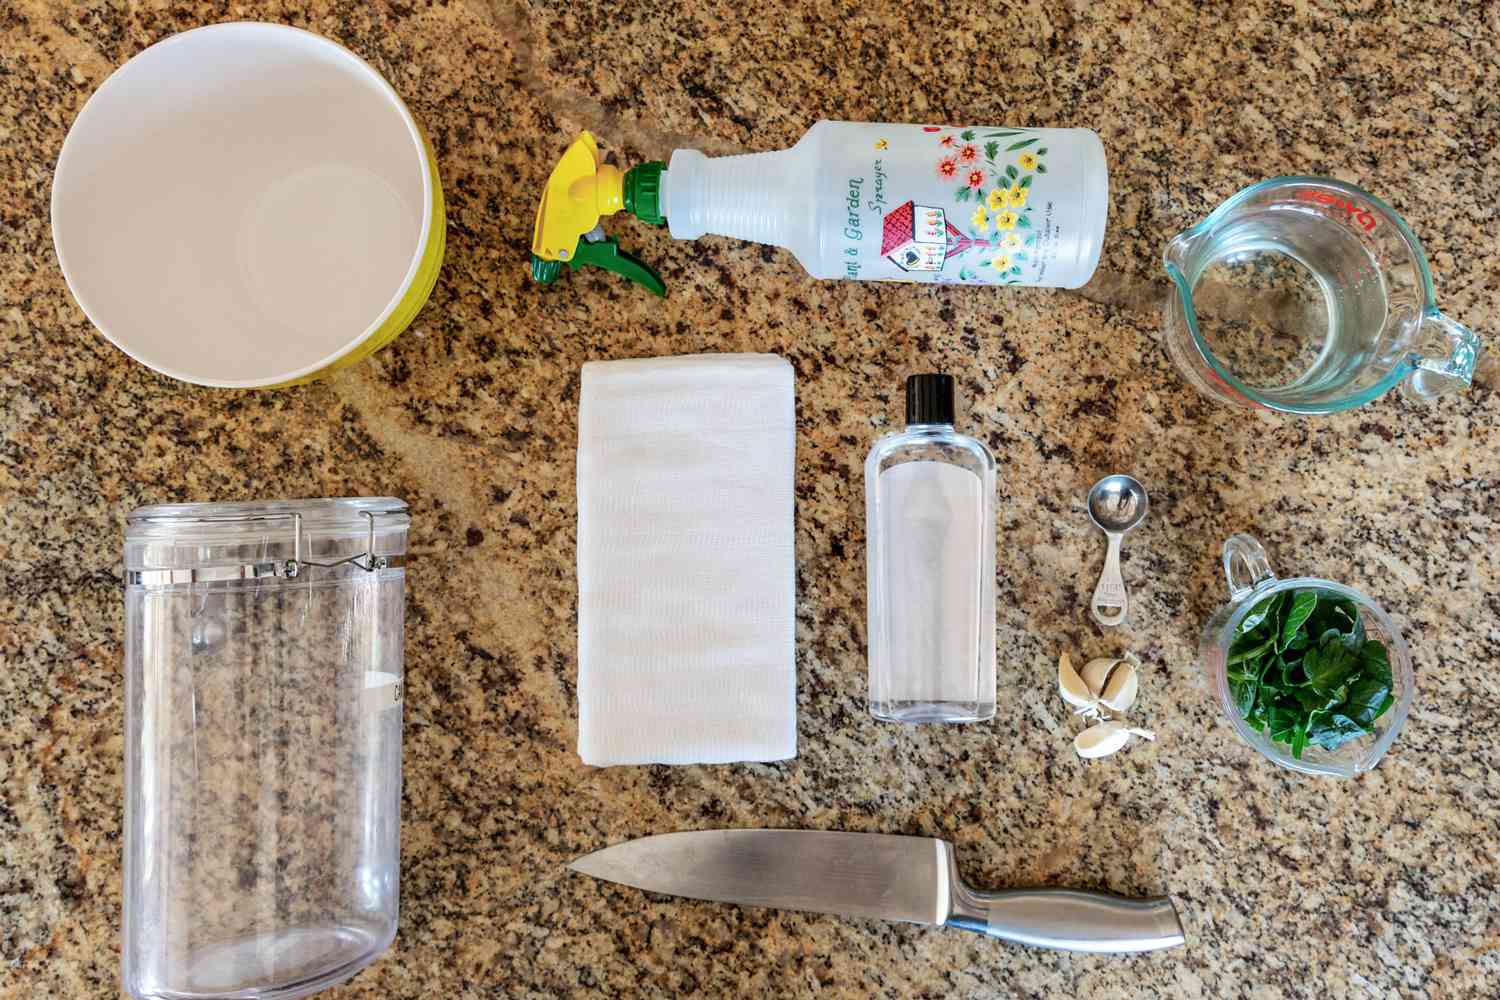 Materialien und Werkzeuge zur Herstellung eines selbstgemachten Blattlaussprays